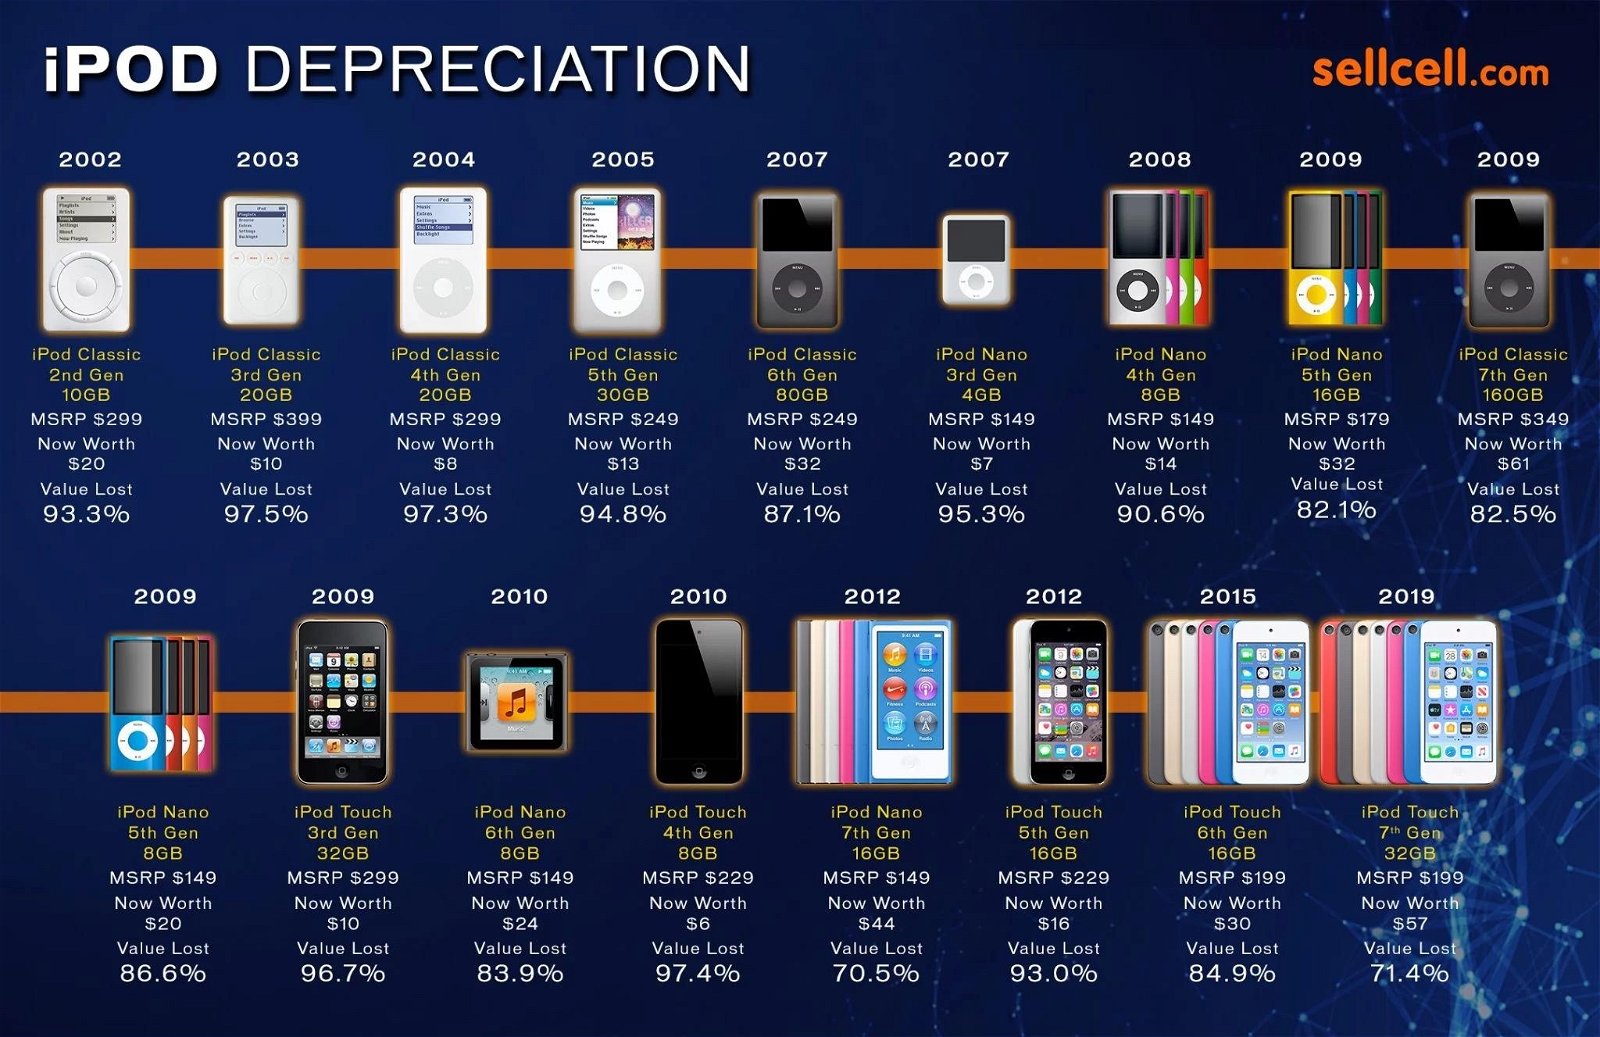 iPod depreciation